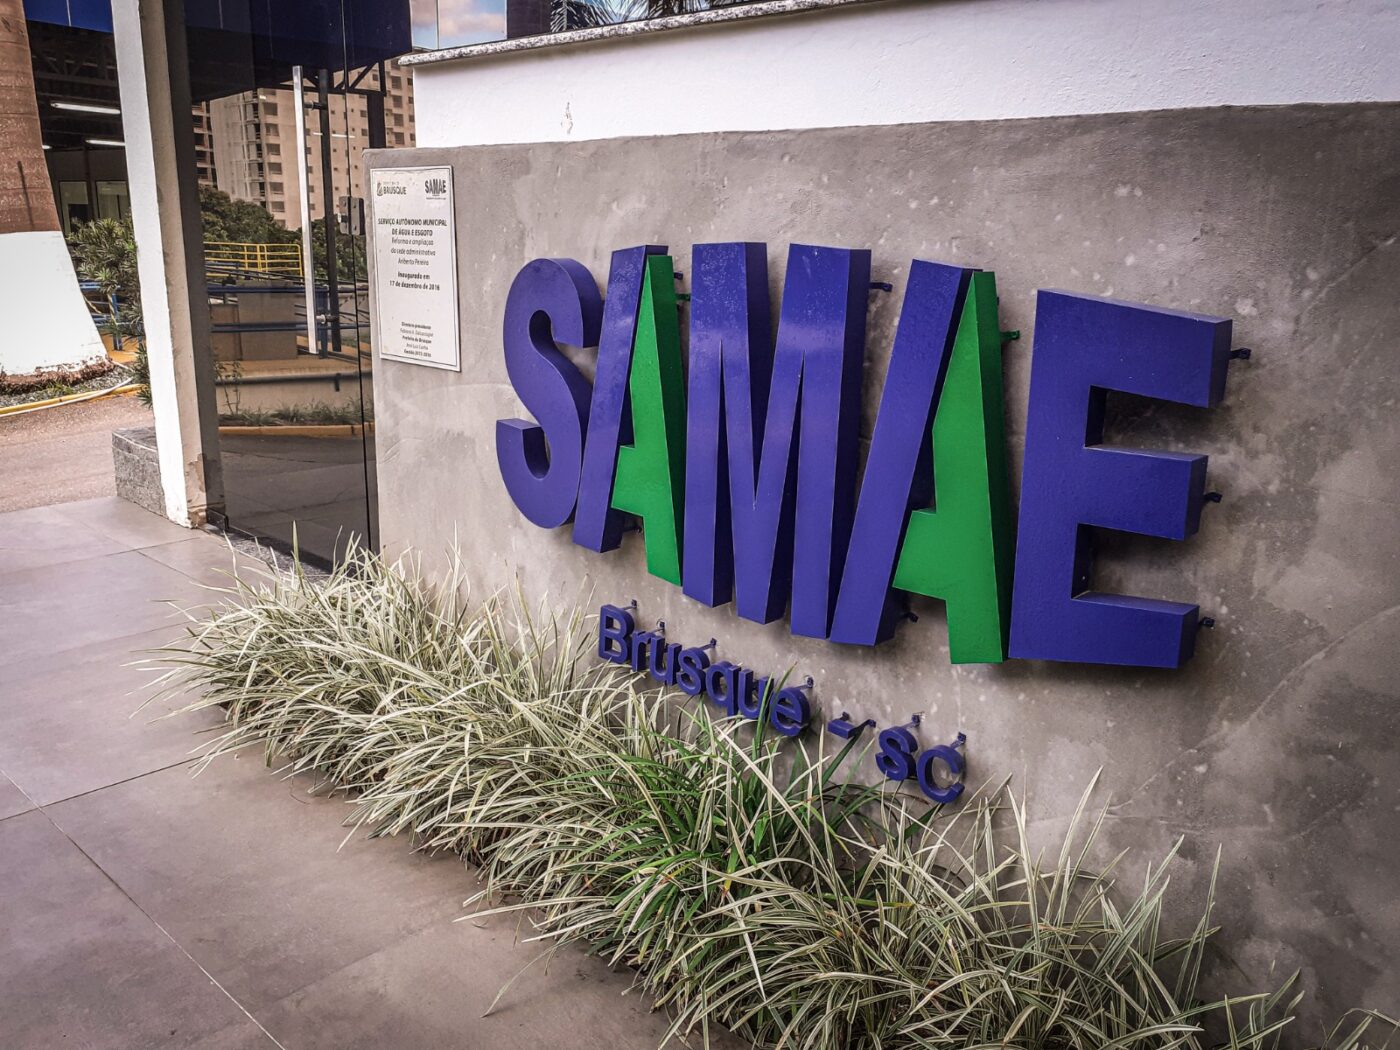 Samae pede o uso racional de água